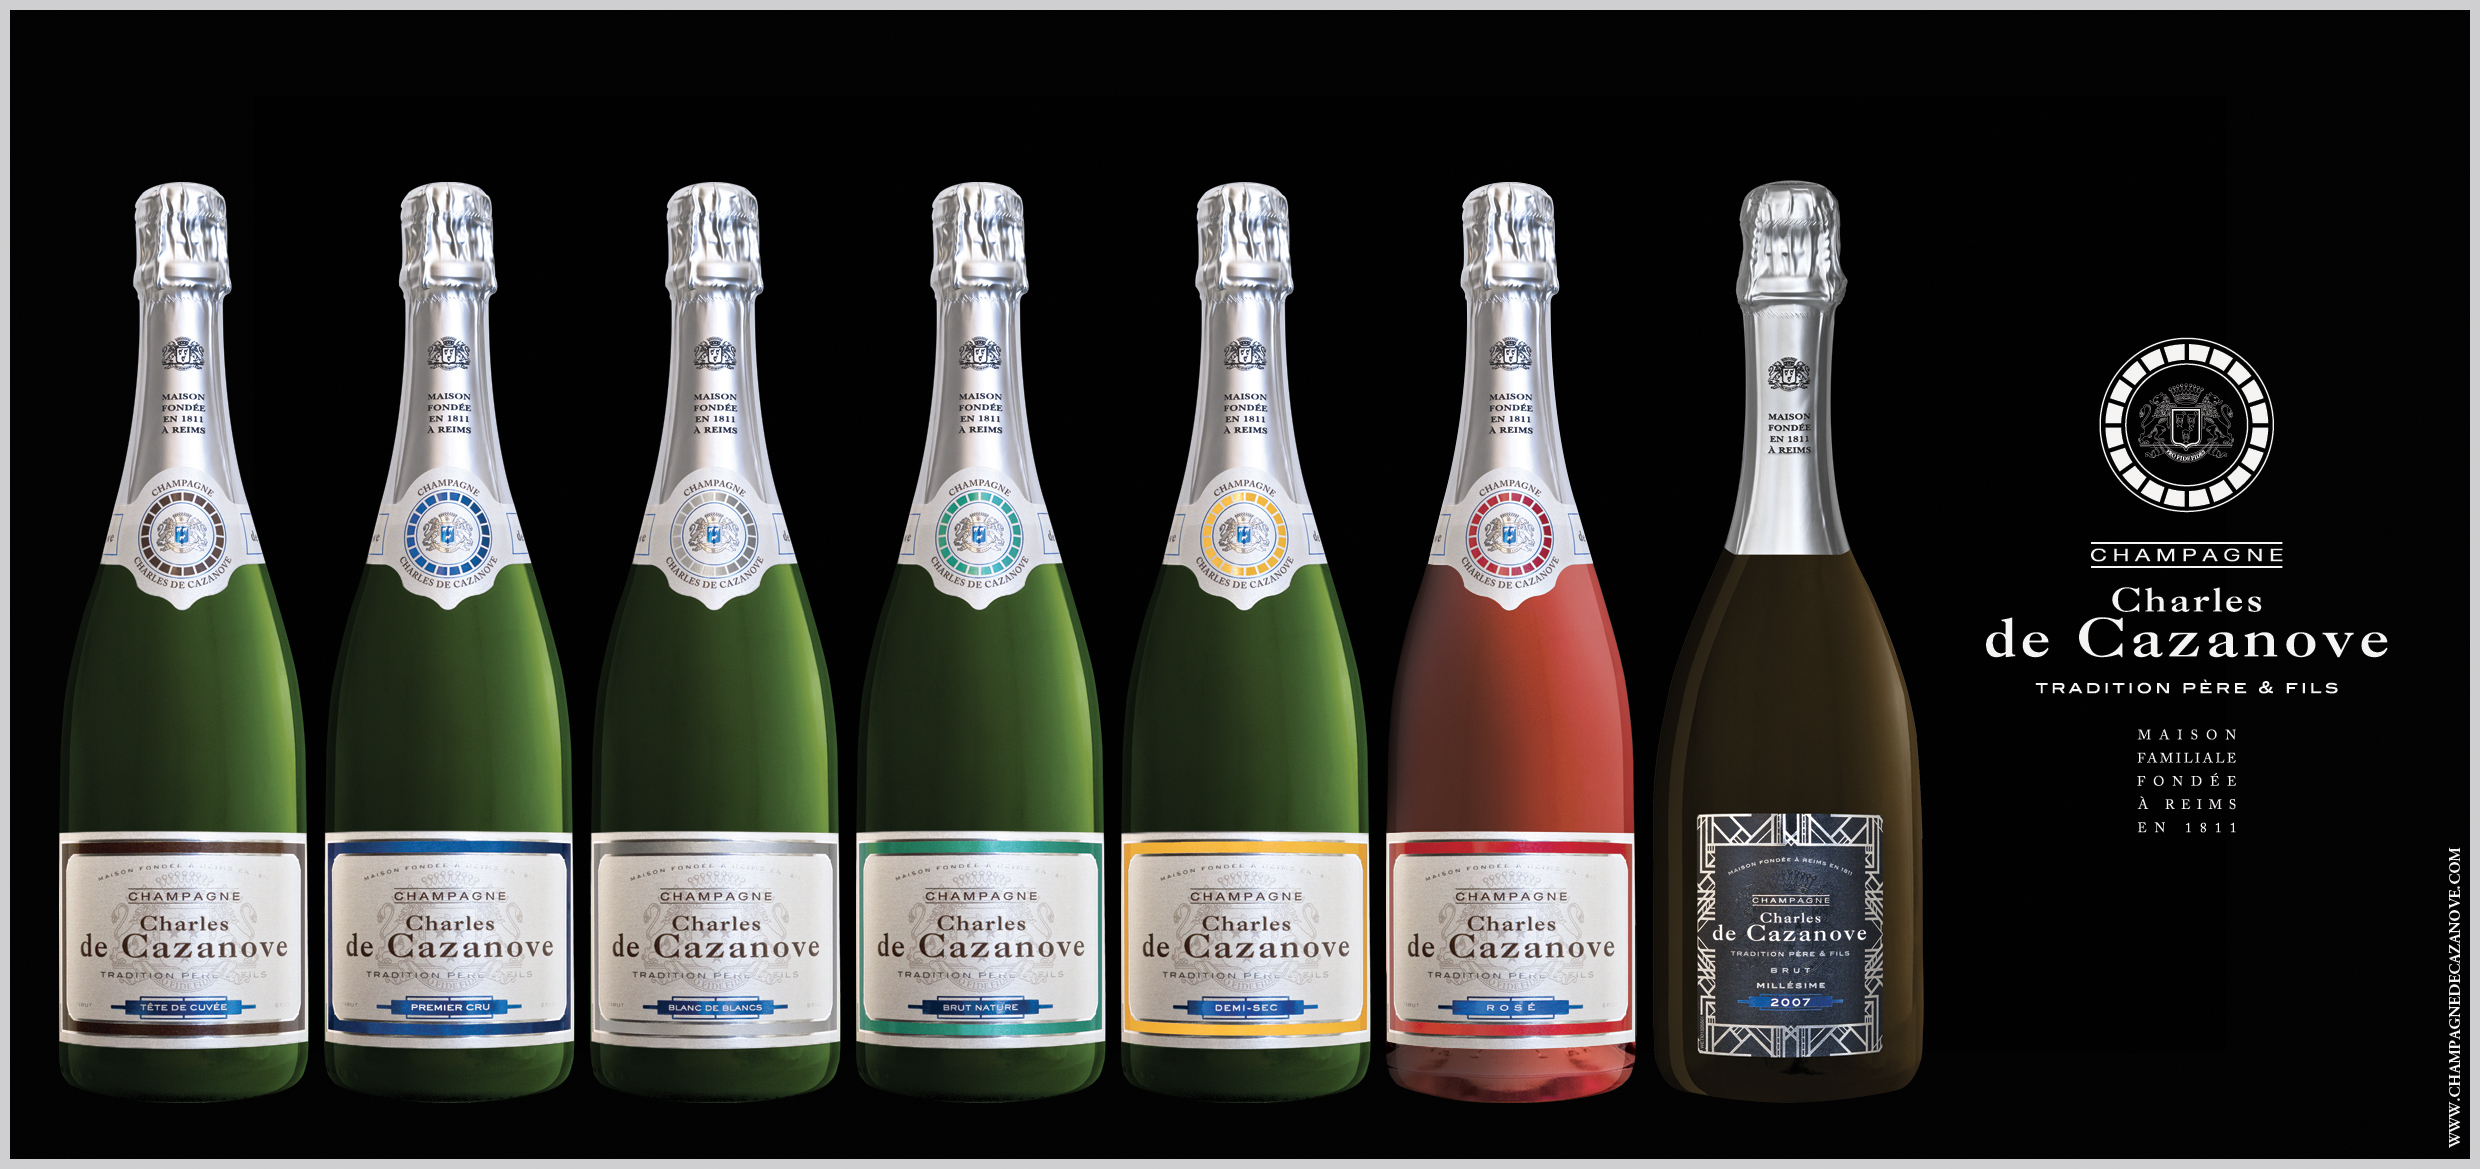 Présentation des nouveaux habilages du Champagne Charles de Cazanove de leur gamme Tradition Père et Fils.